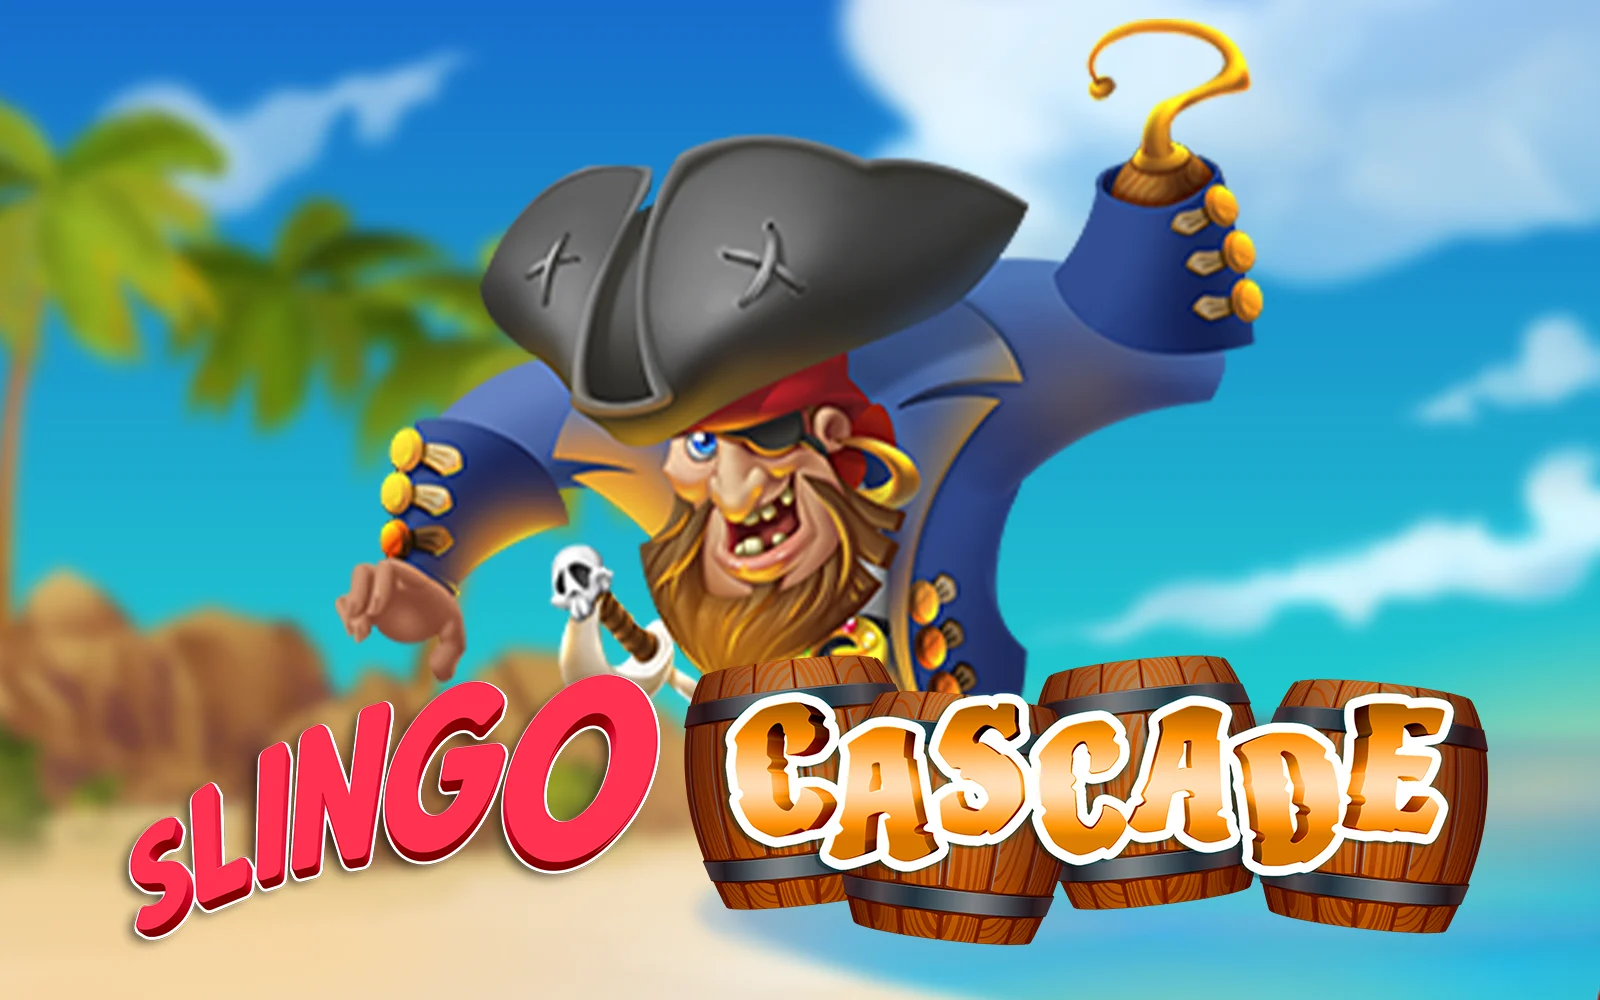 เล่น Slingo Cascade บนคาสิโนออนไลน์ Starcasino.be